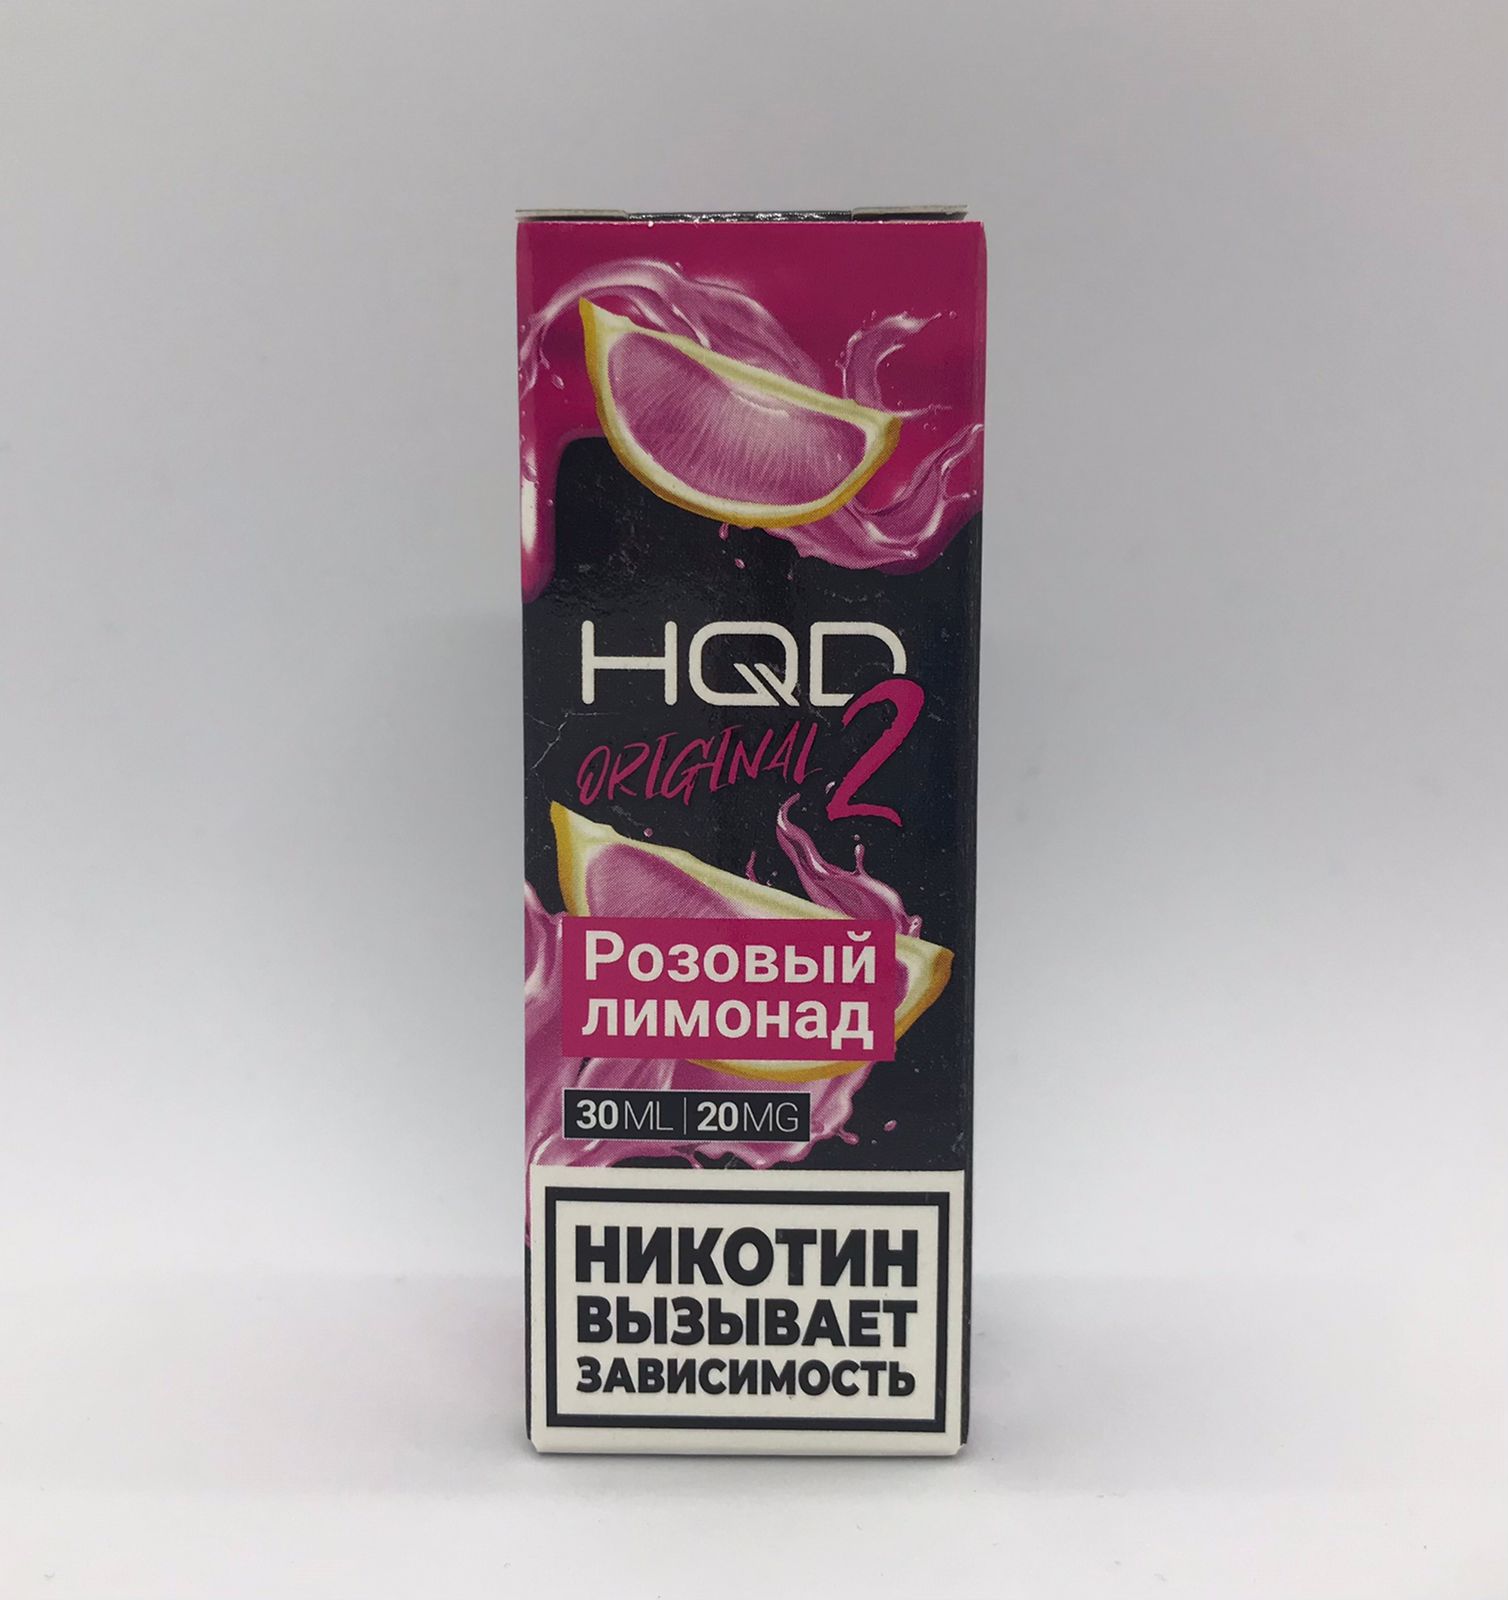 HQD ORIGINAL 2.0 / Розовый лимонад